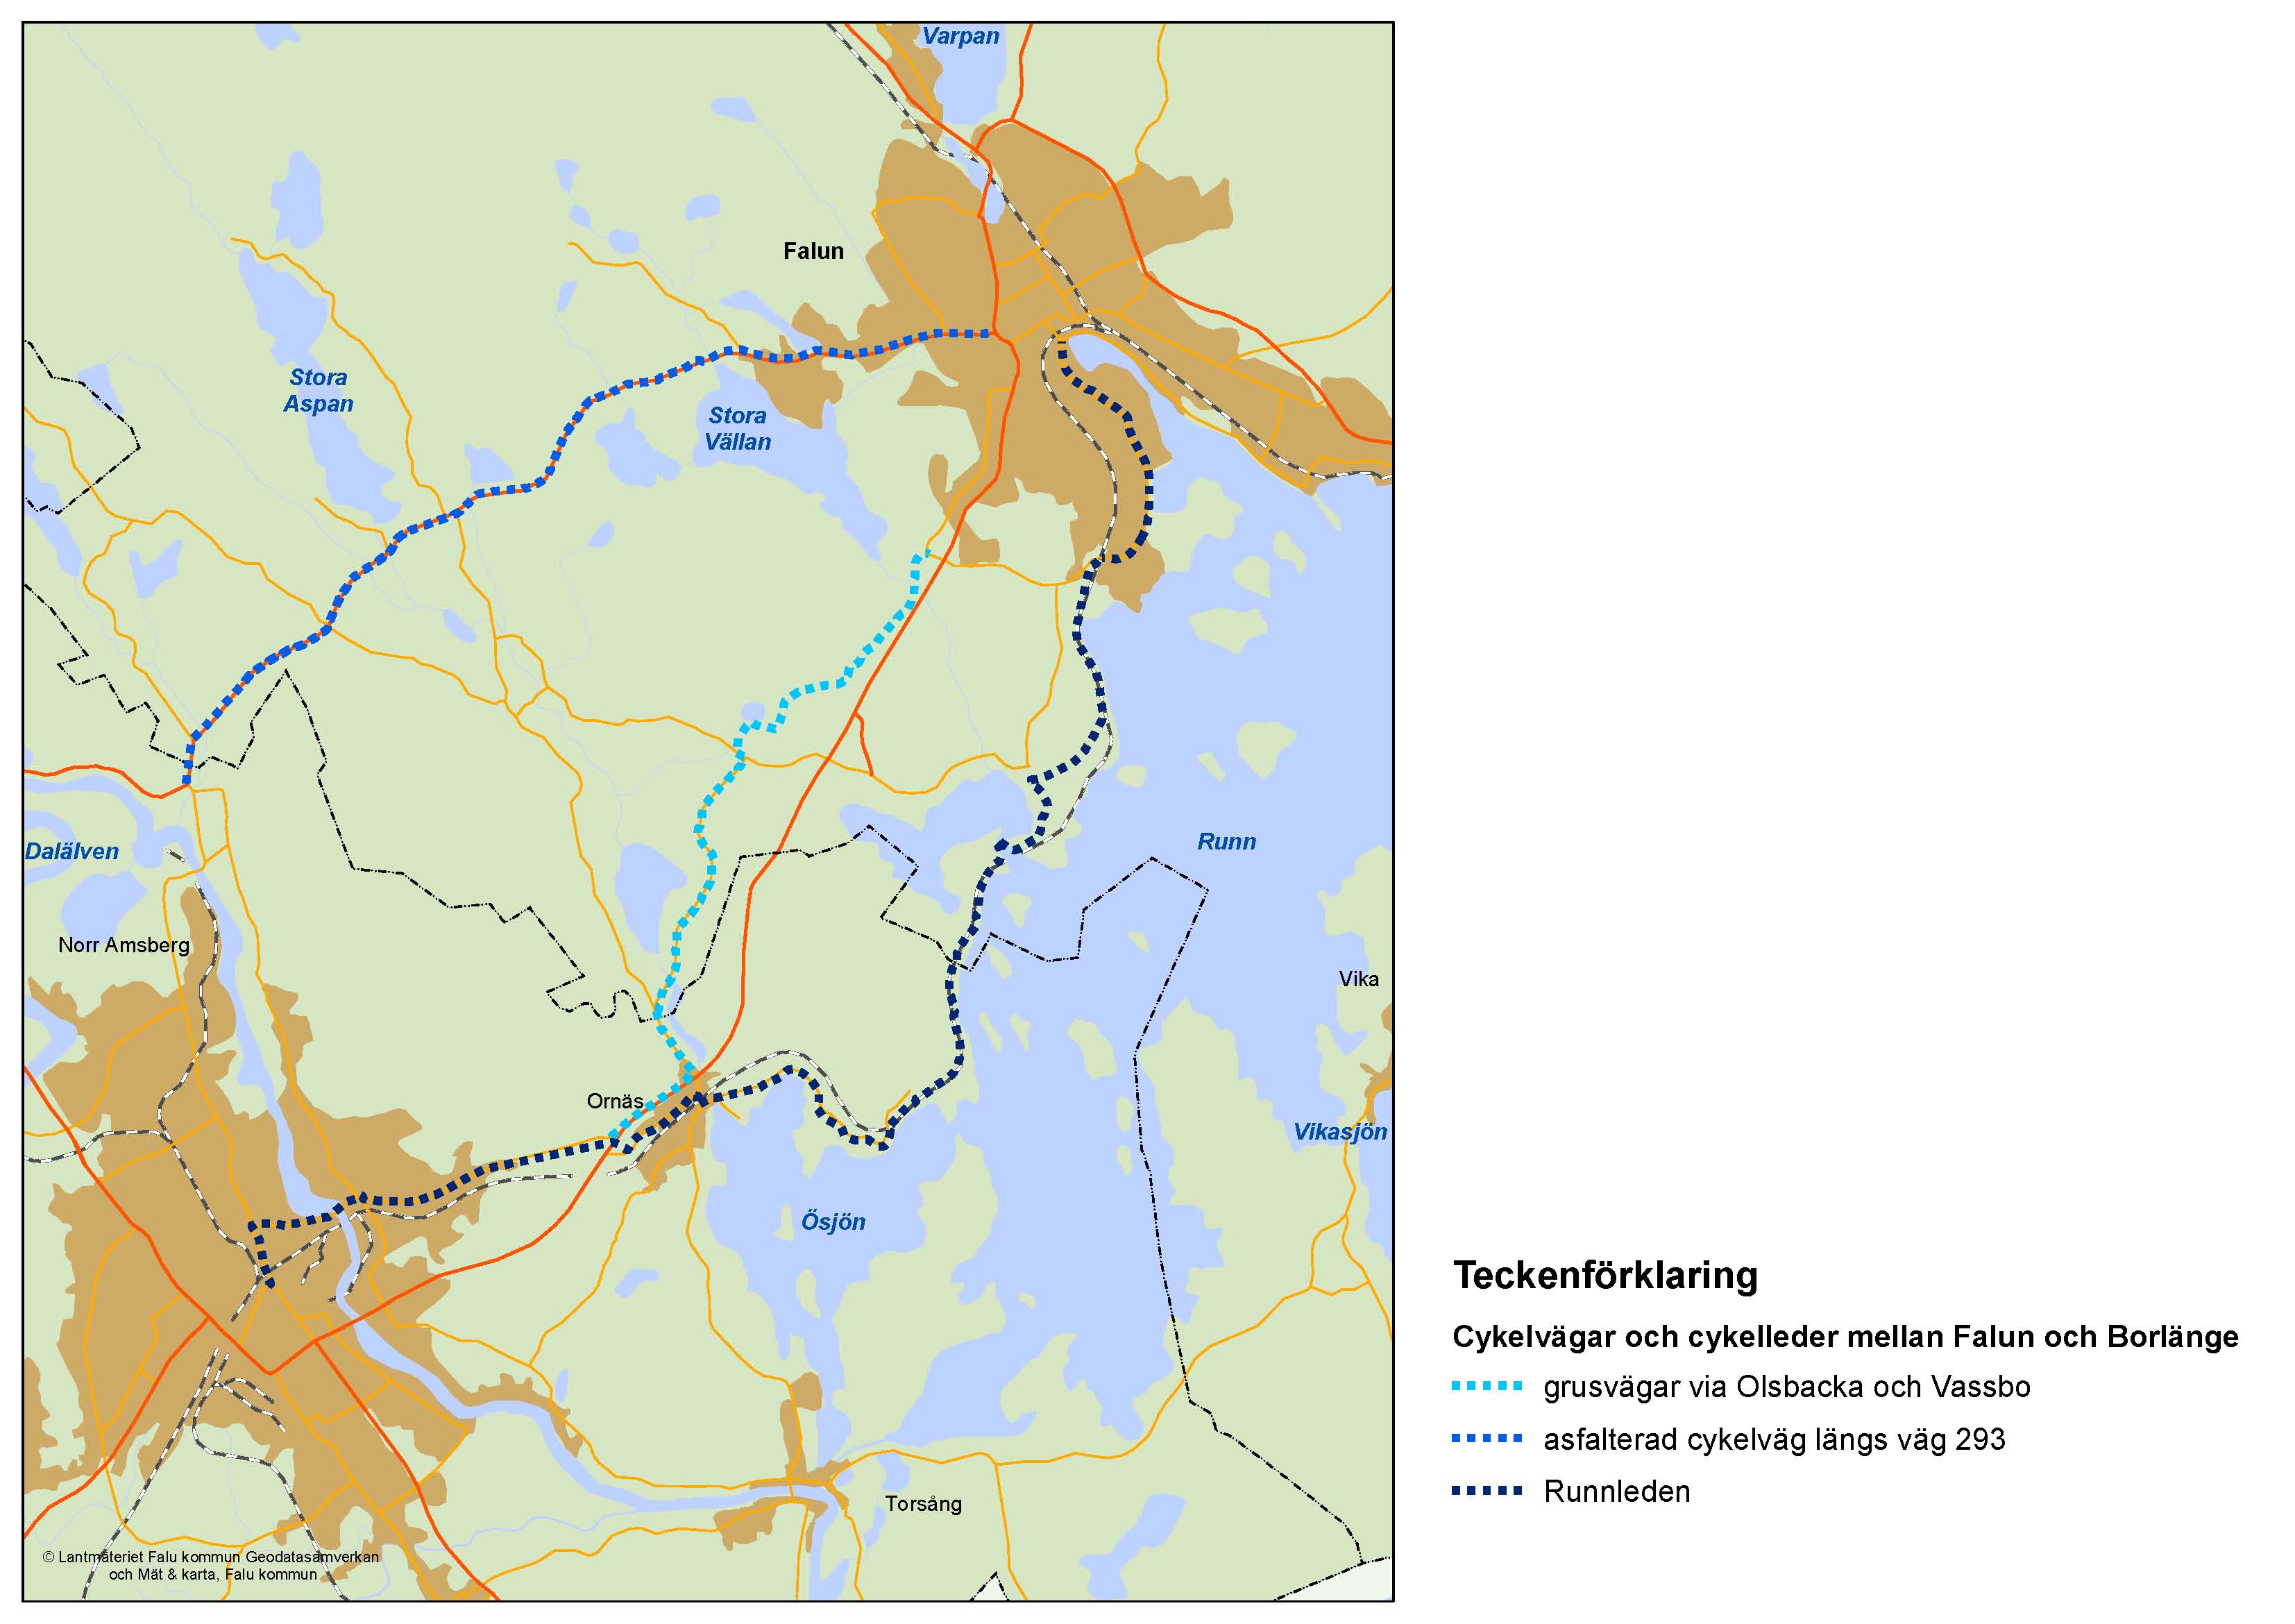 Bild 9.2 Cykelvägar och cykelleder mellan Falun och Borlänge 